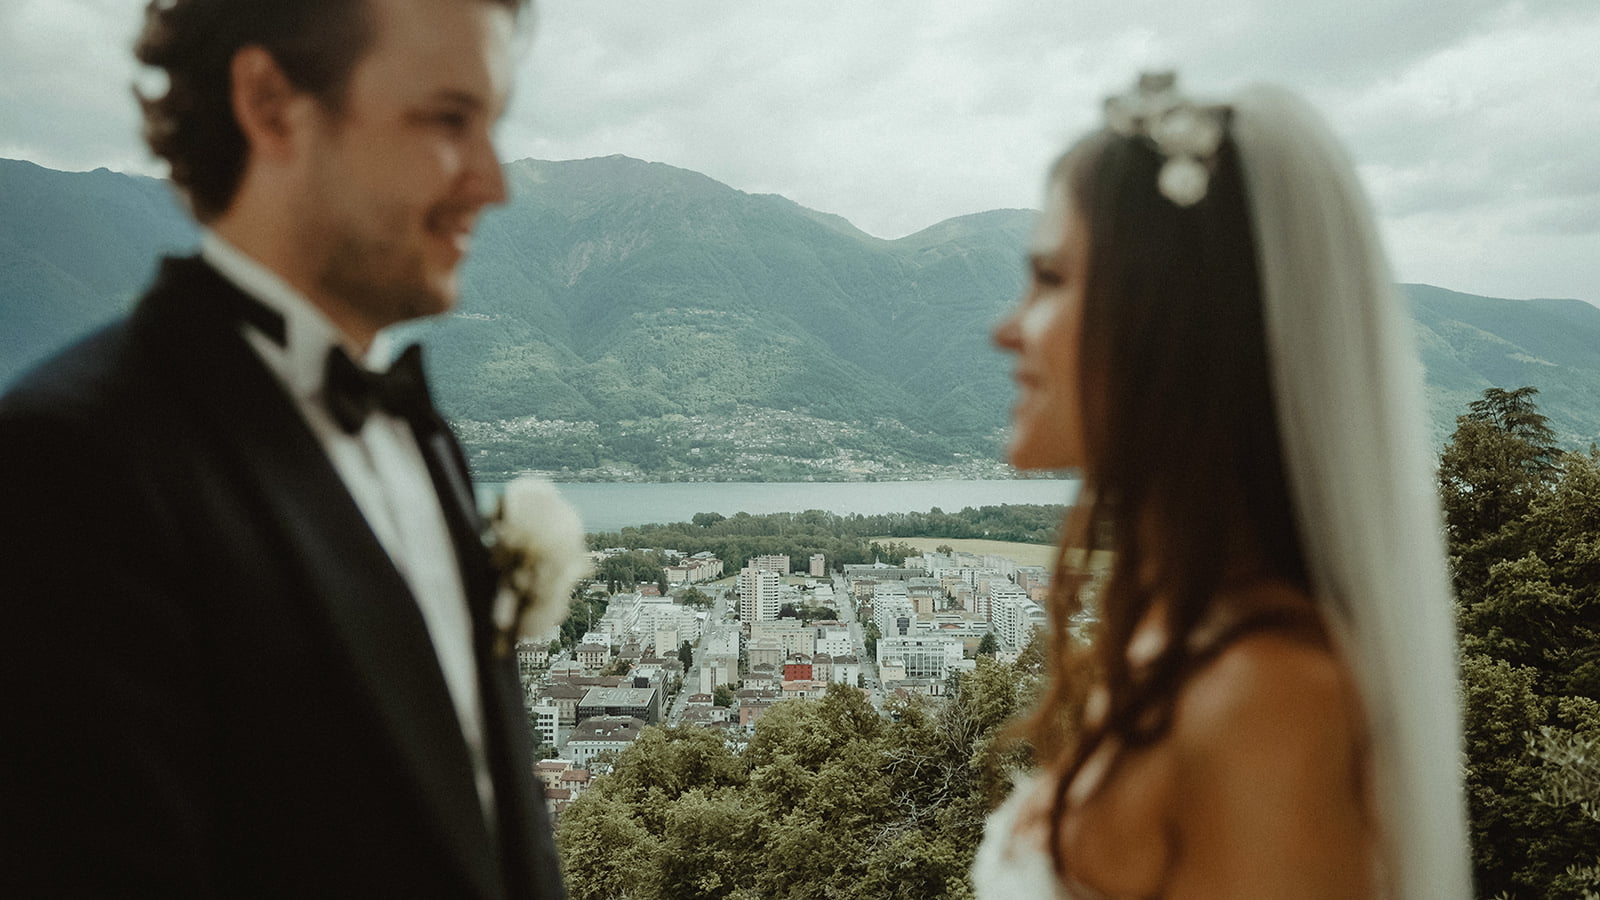 destination wedding videography in Switzerland Locarno Ticino laggo maggiore